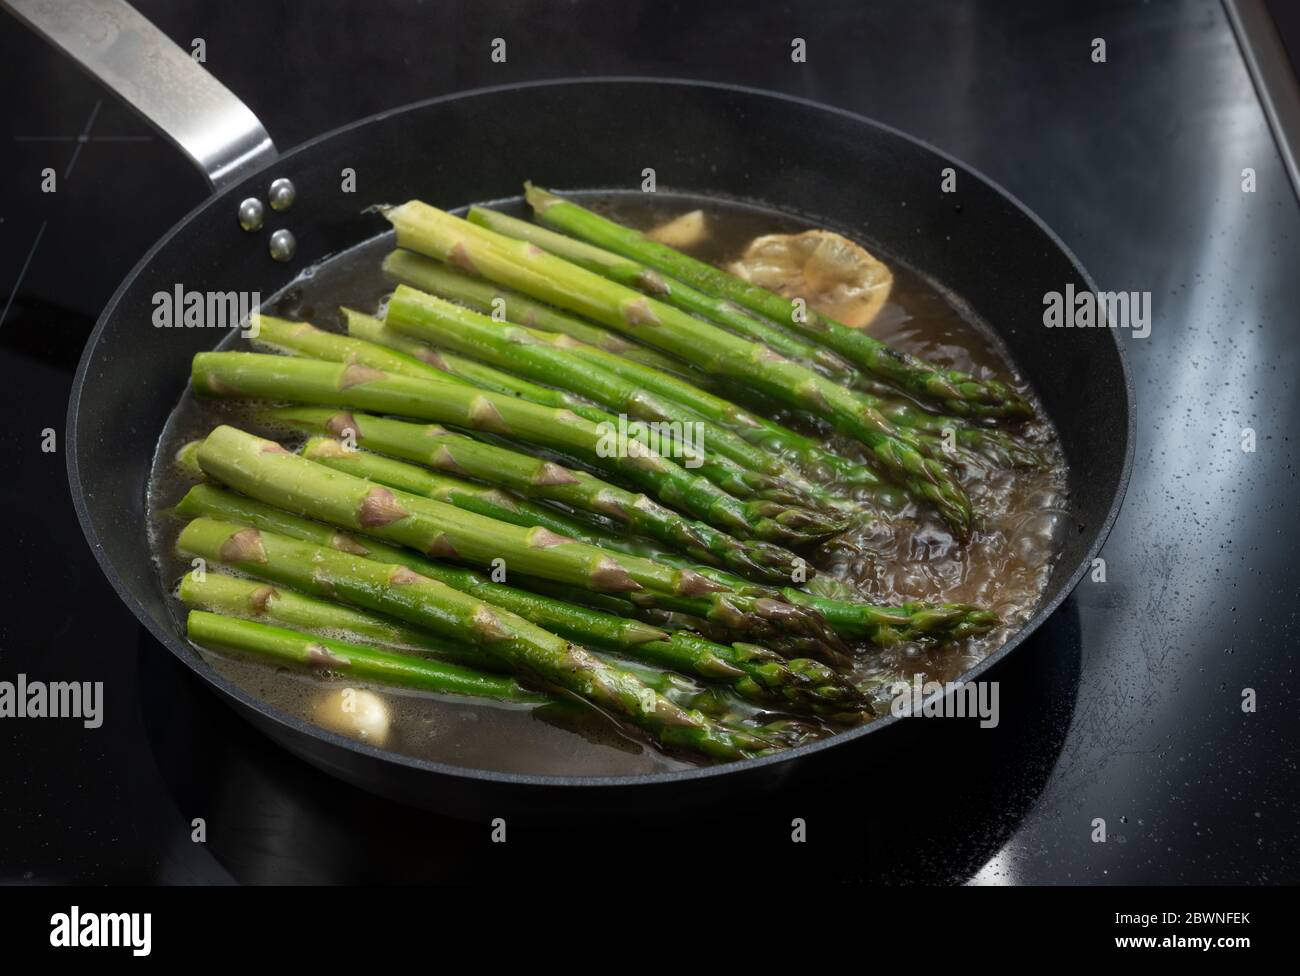 Cuisiner des asperges vertes biologiques dans une poêle sur un poêle noir pour un dîner végétarien sain, concentration sélectionnée, profondeur de champ étroite Banque D'Images